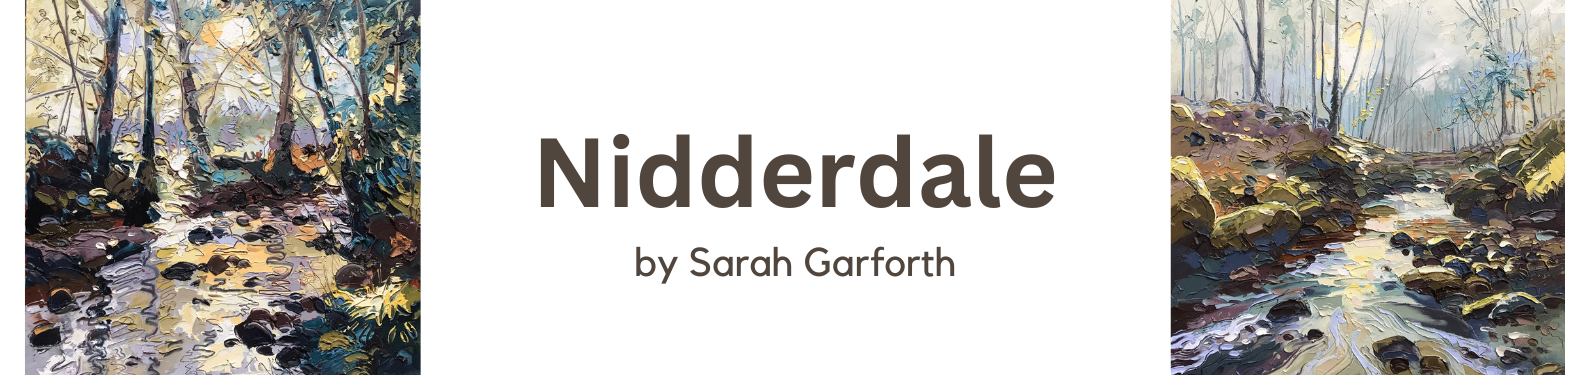 Nidderdale - Sarah Garforth